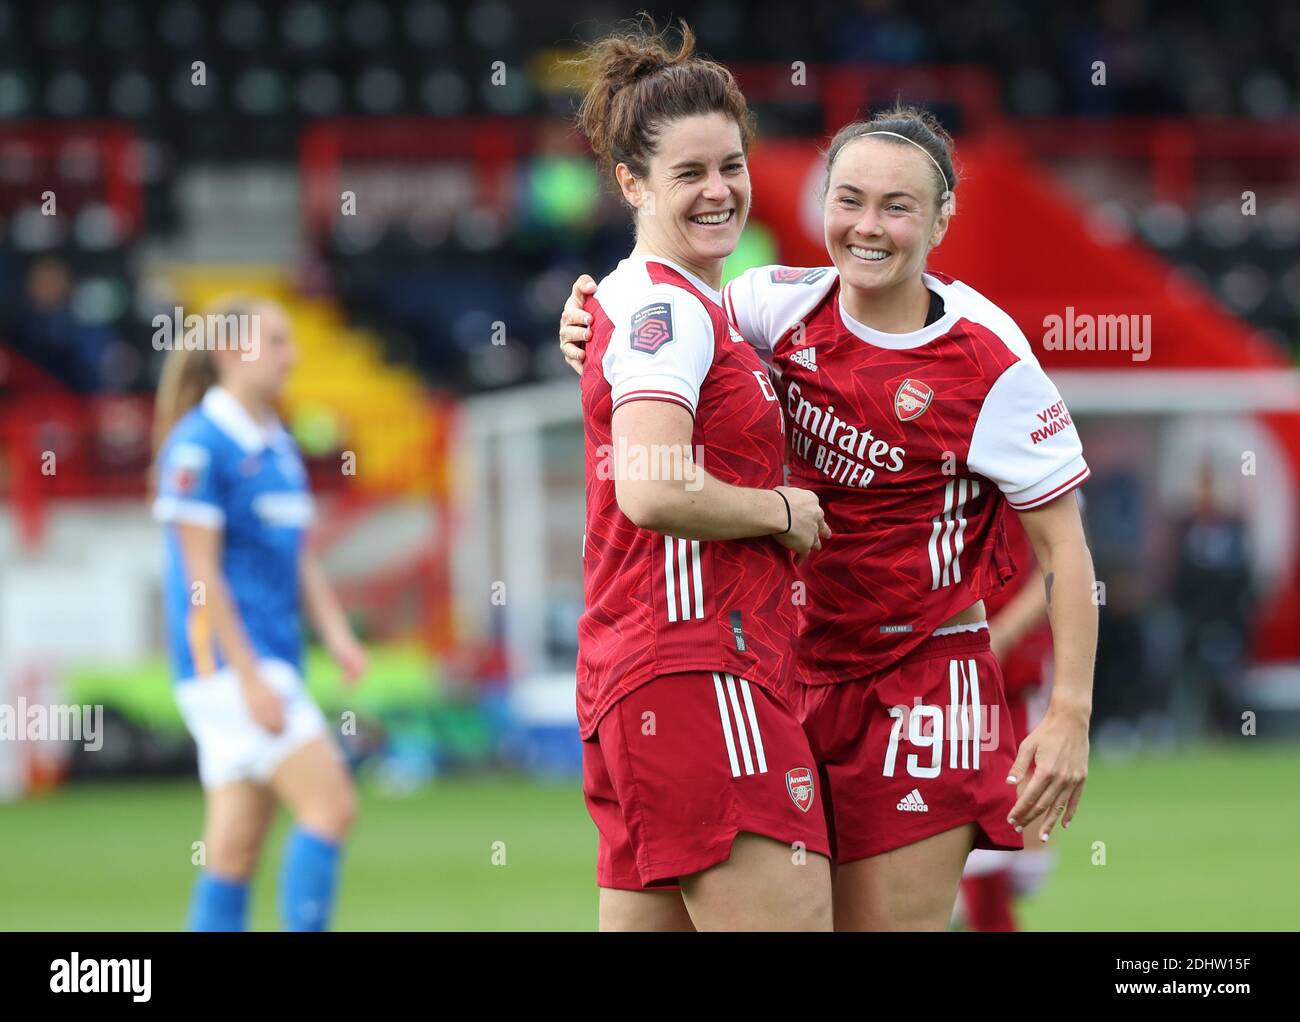 ArsenalÕs Jen Beattie (L) celebra il punteggio con Caitlin Foord contro Brighton & Hove Albion Women poco dopo che le è stato diagnosticato il cancro al seno. 11 ottobre 2020 Foto Stock